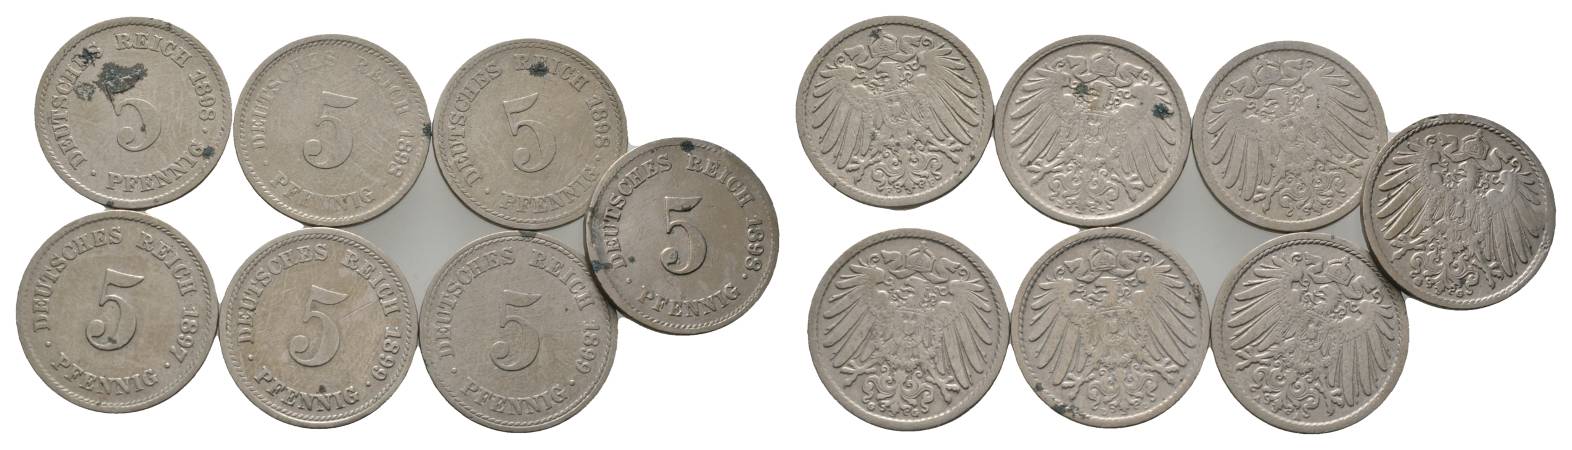  Kaiserreich, 7 Kleinmünzen (1898/1899/1897)   